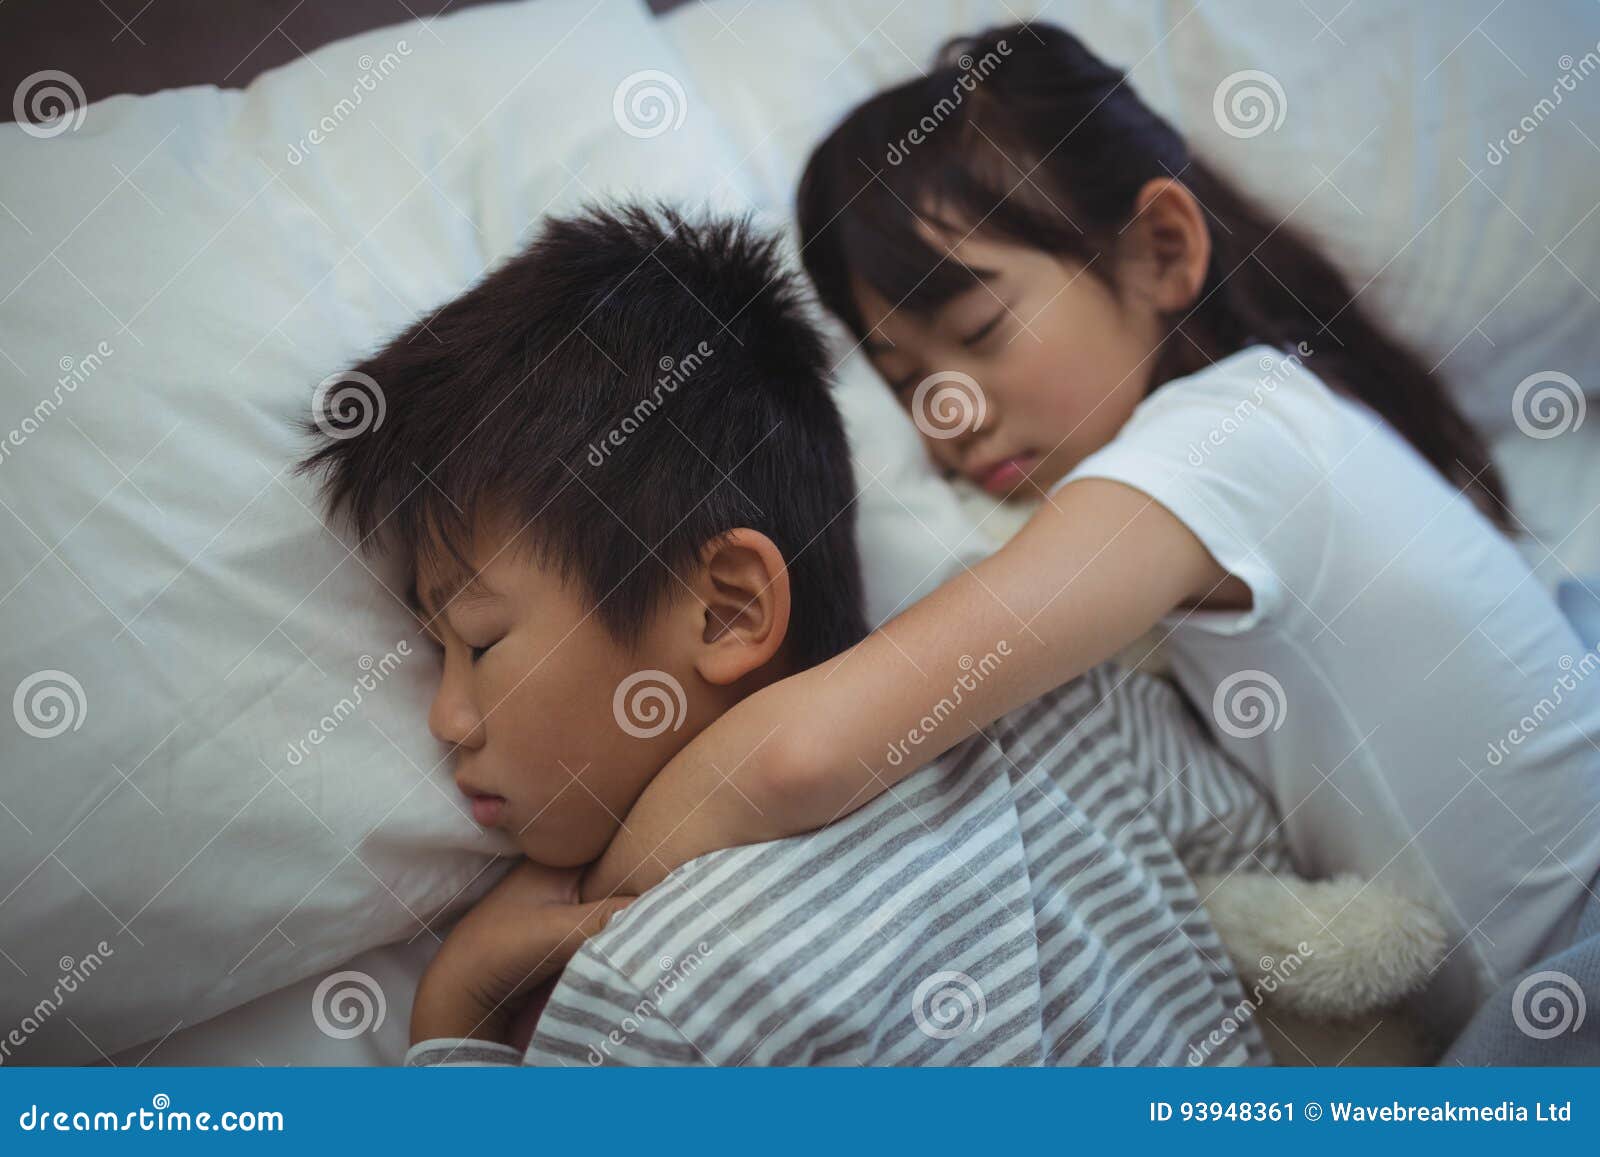 Сестра залезла спящему брату. Спящей сестра японская. Сестра и брать ночью в кровати. Сестрёнка заползла к брату в постель.